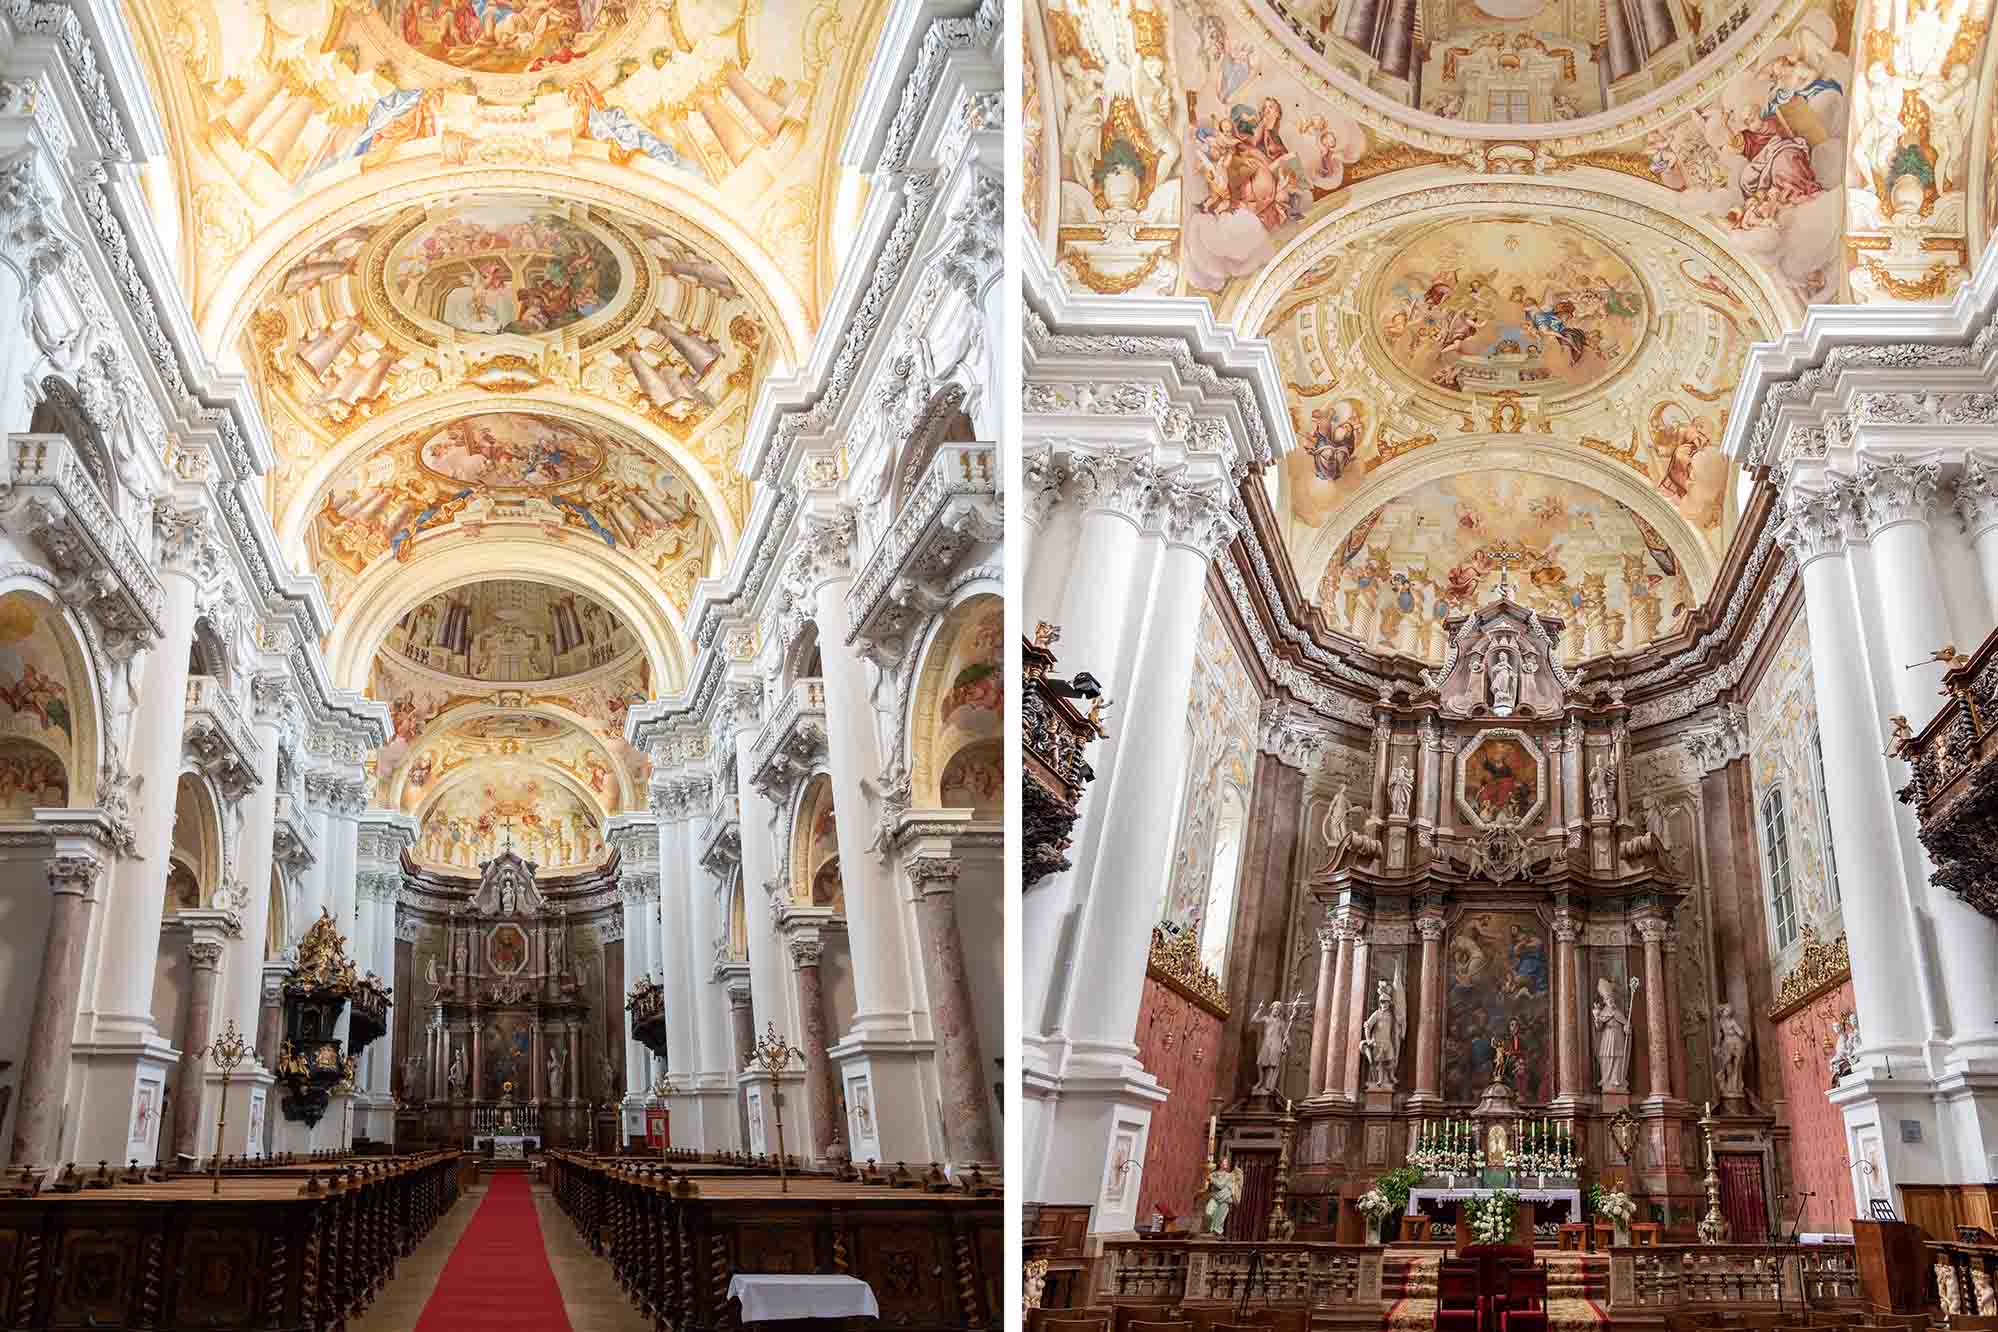 Gian giữa và thánh đường của Vương cung Thánh đường Thánh Florian. (Ảnh: Redfox1980/Shutterstock)